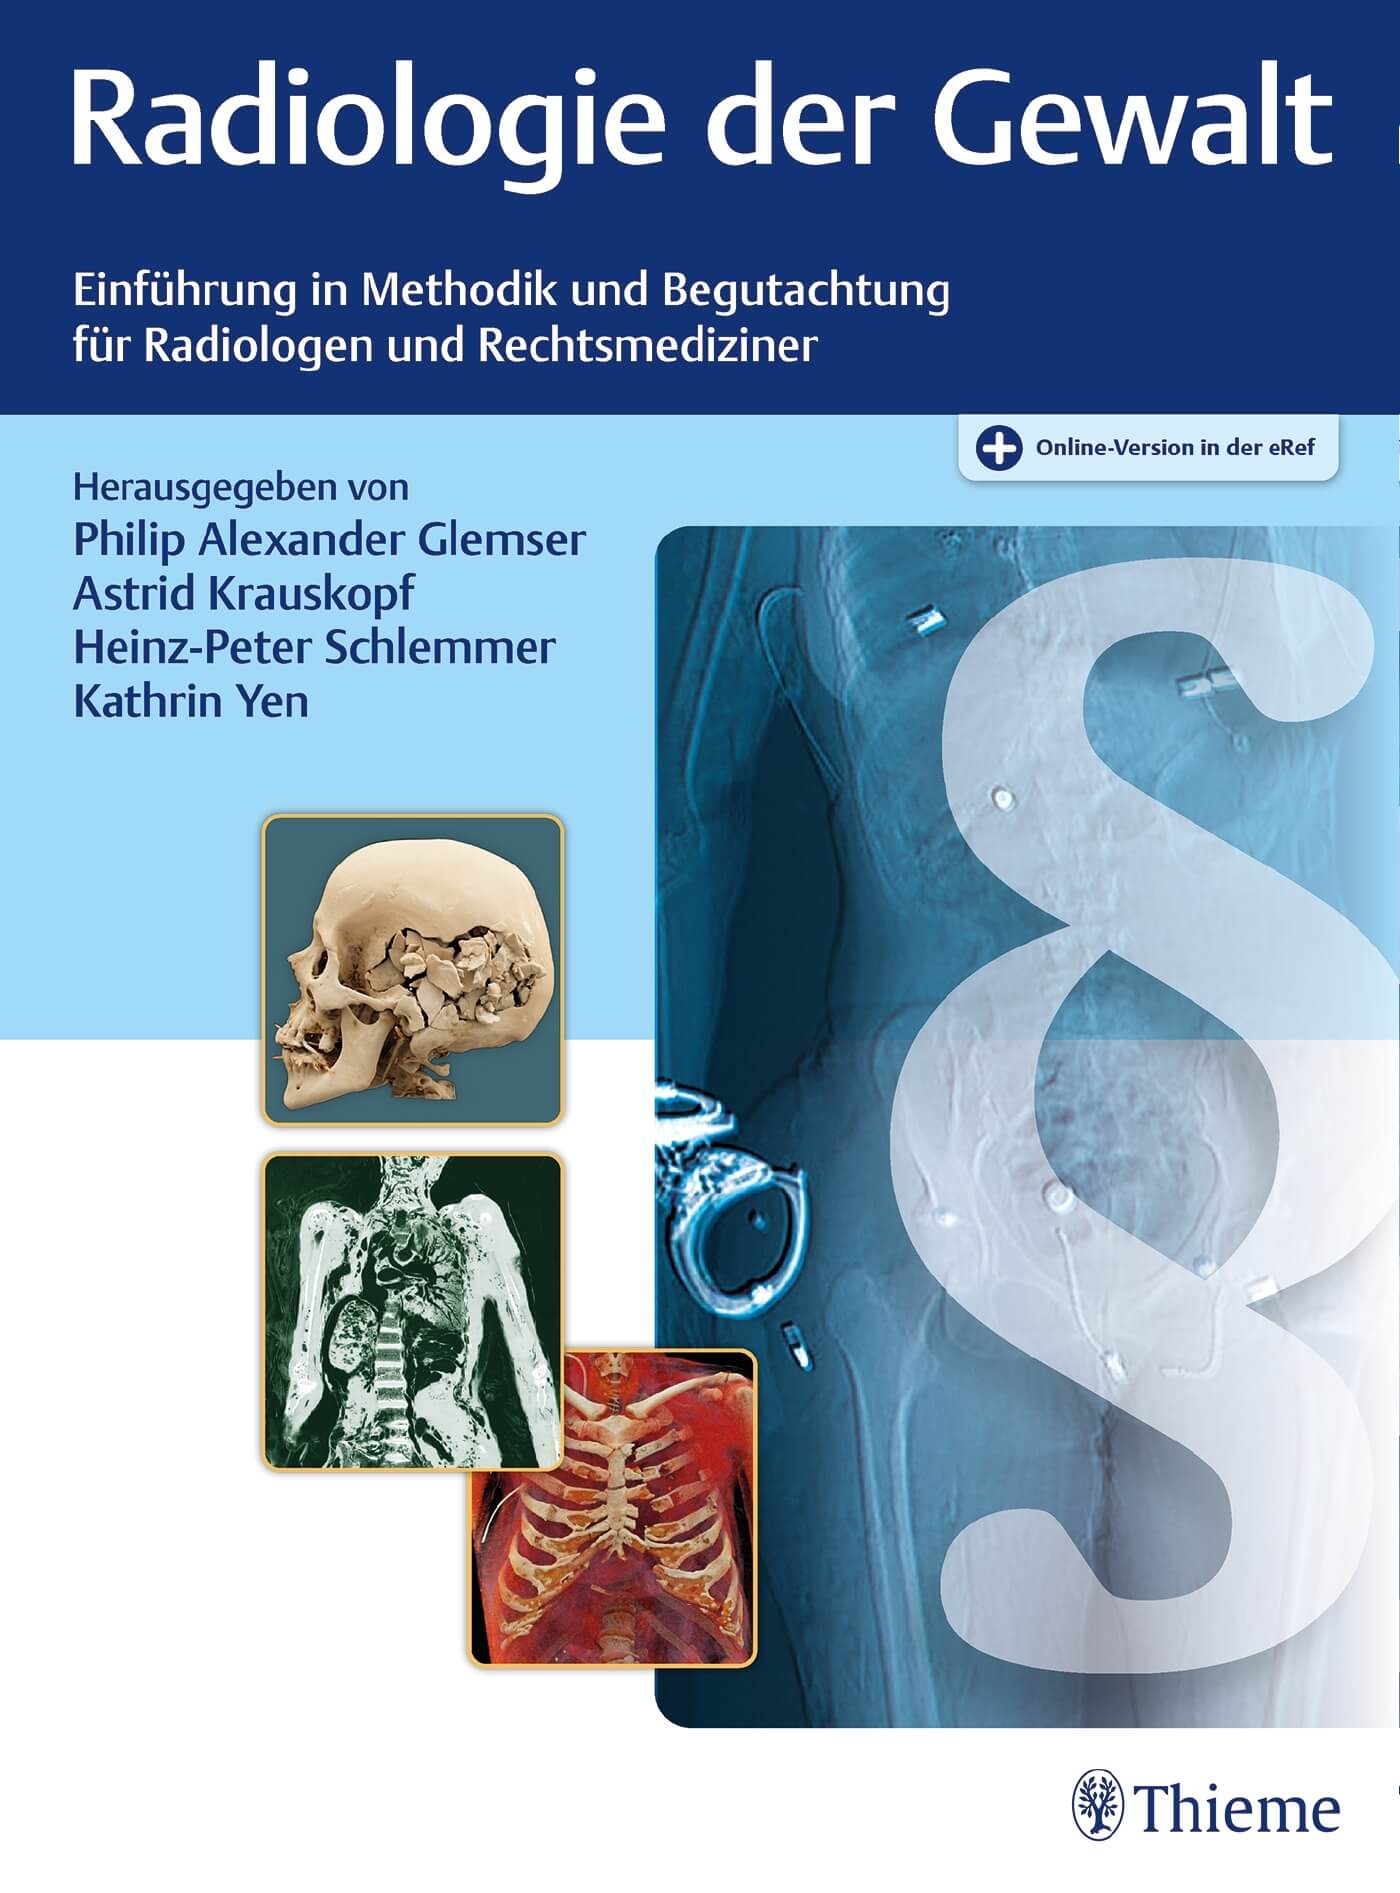 Radiologie der Gewalt: Einführung in Methodik und Begutachtung für Radiologen und Rechtsmediziner